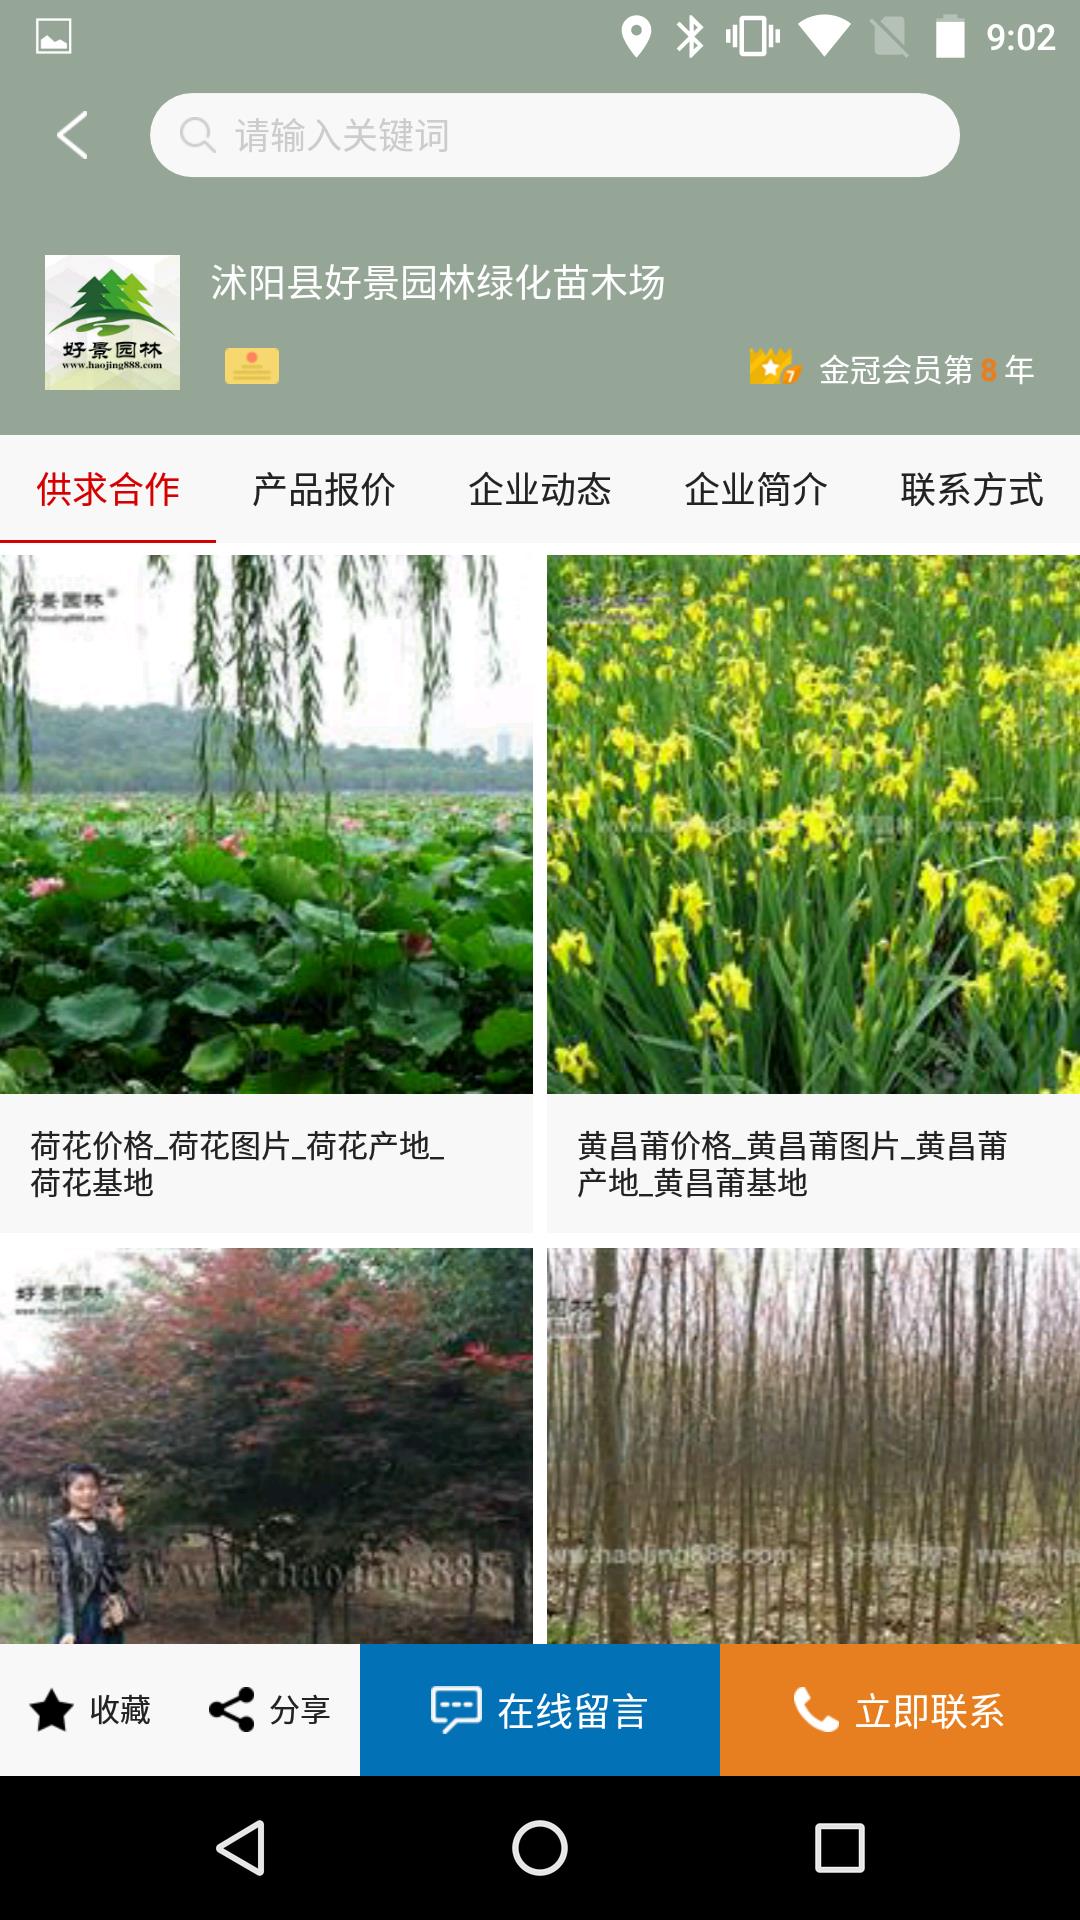 中国园林网4